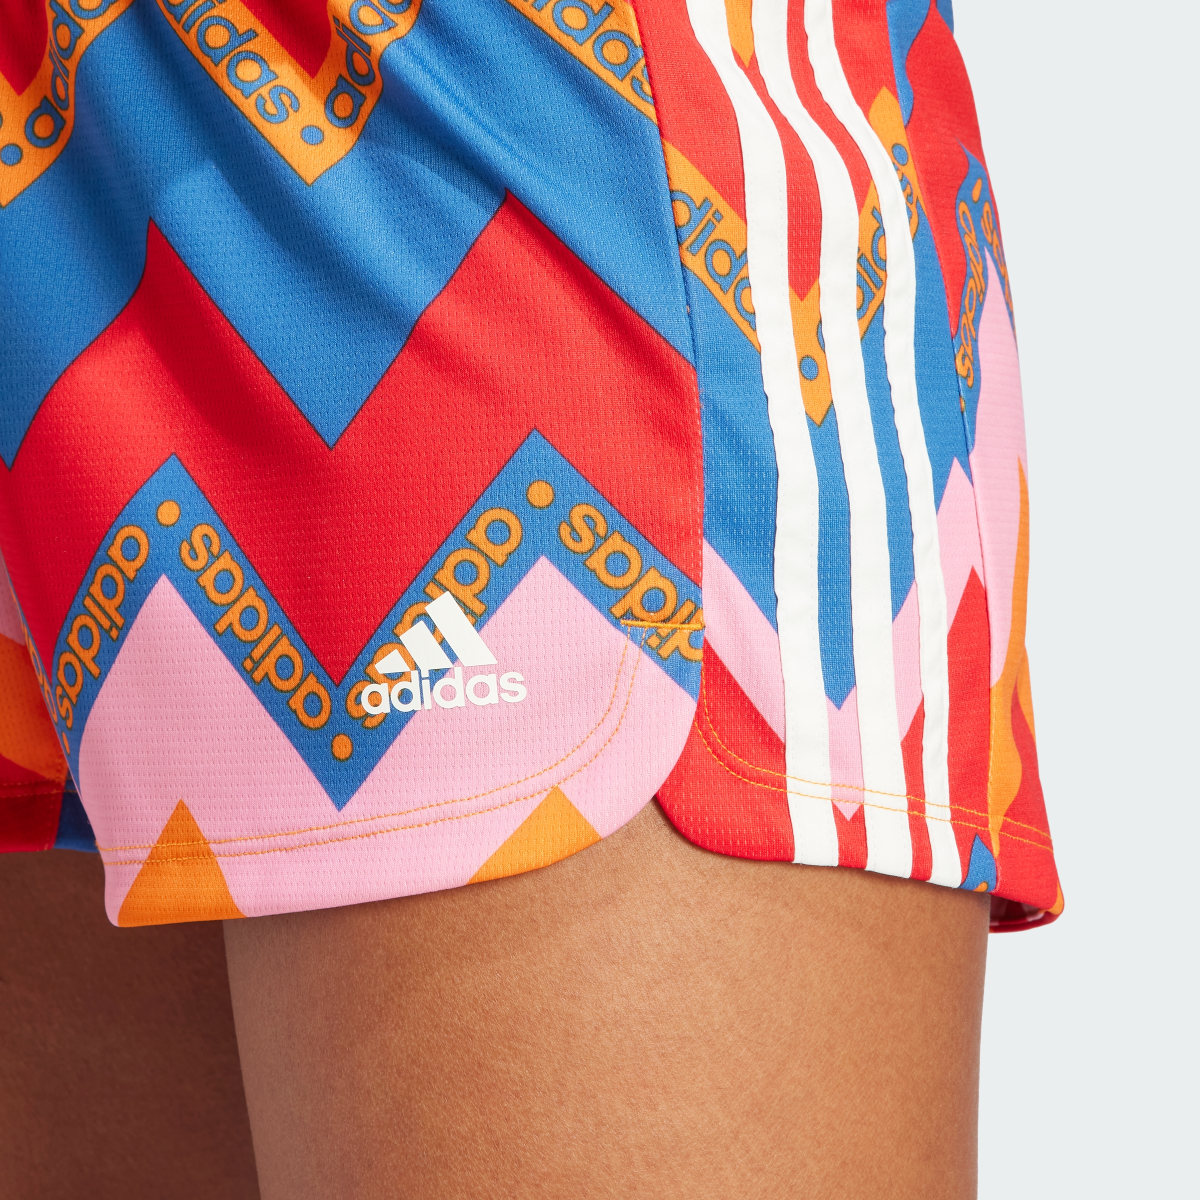 Adidas x FARM Rio Pacer Shorts. 5